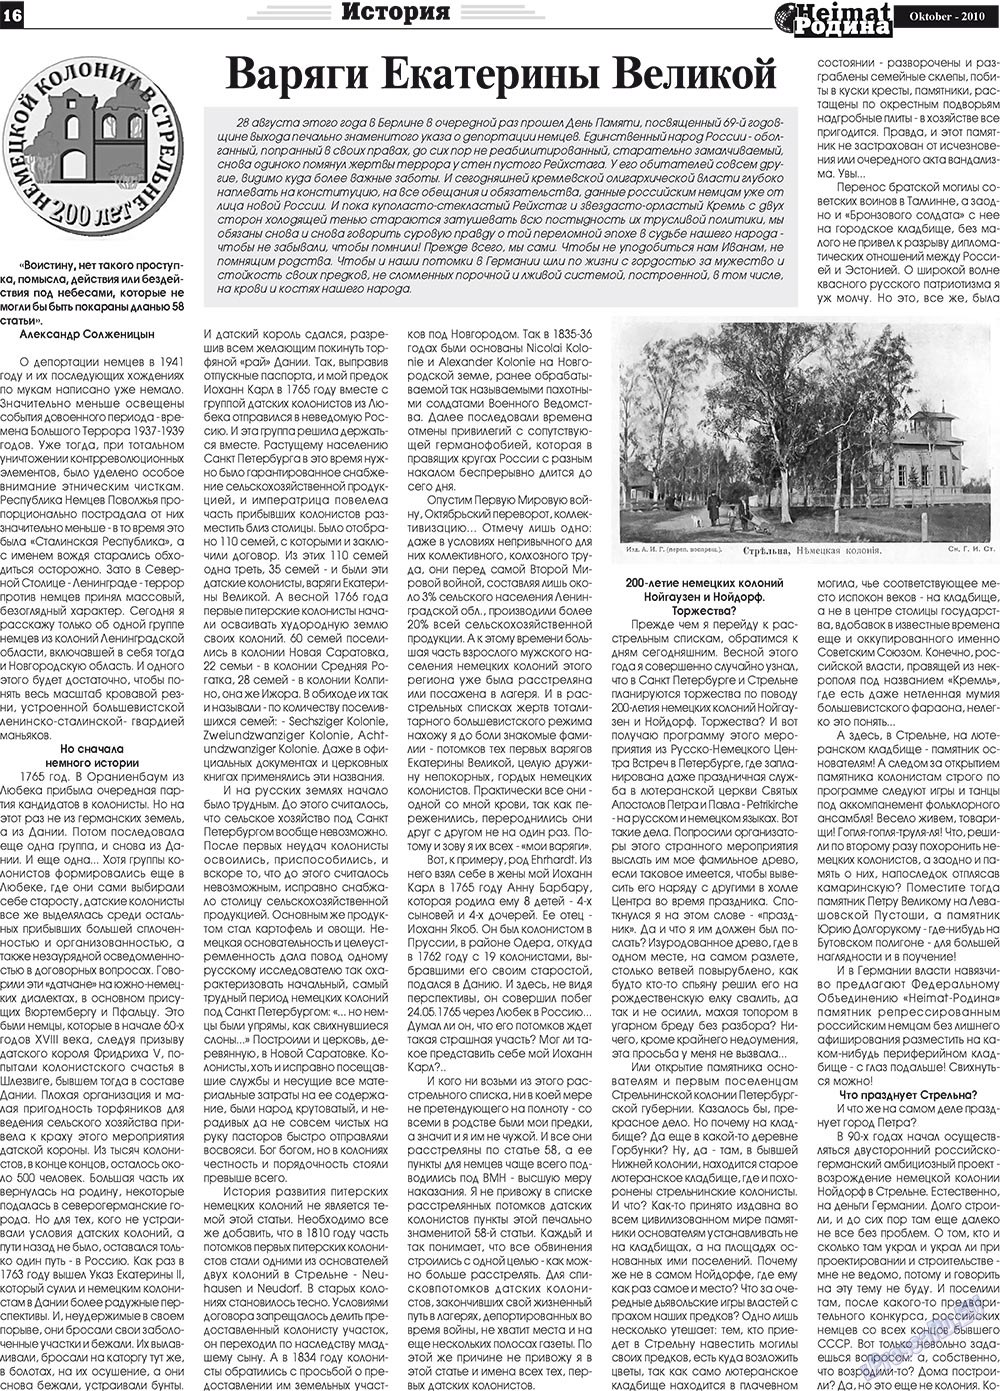 Heimat-Родина (газета). 2010 год, номер 10, стр. 16